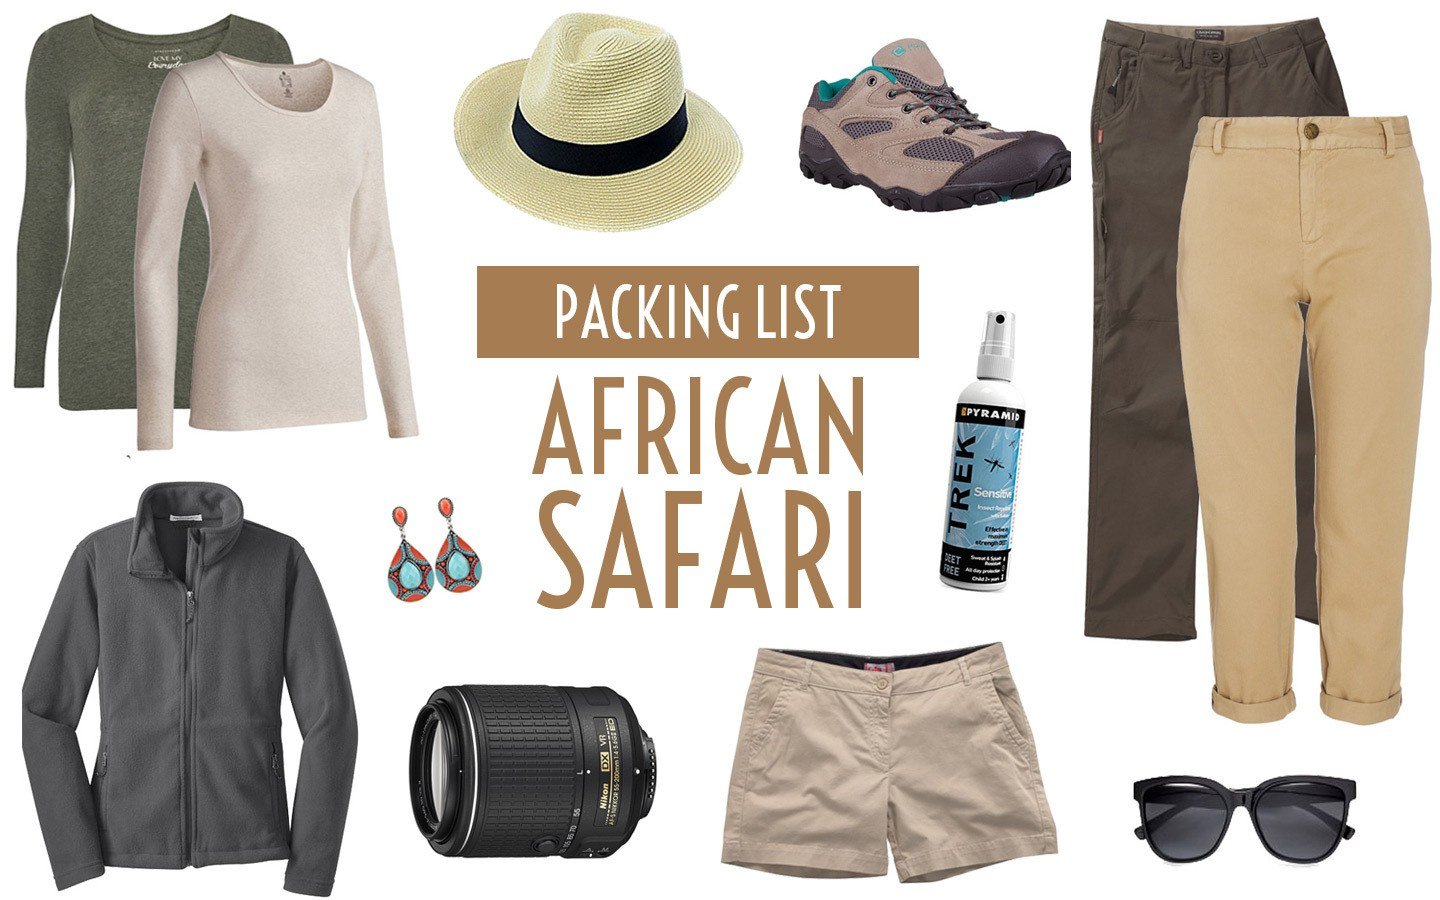 What to wear on a safari in Uganda